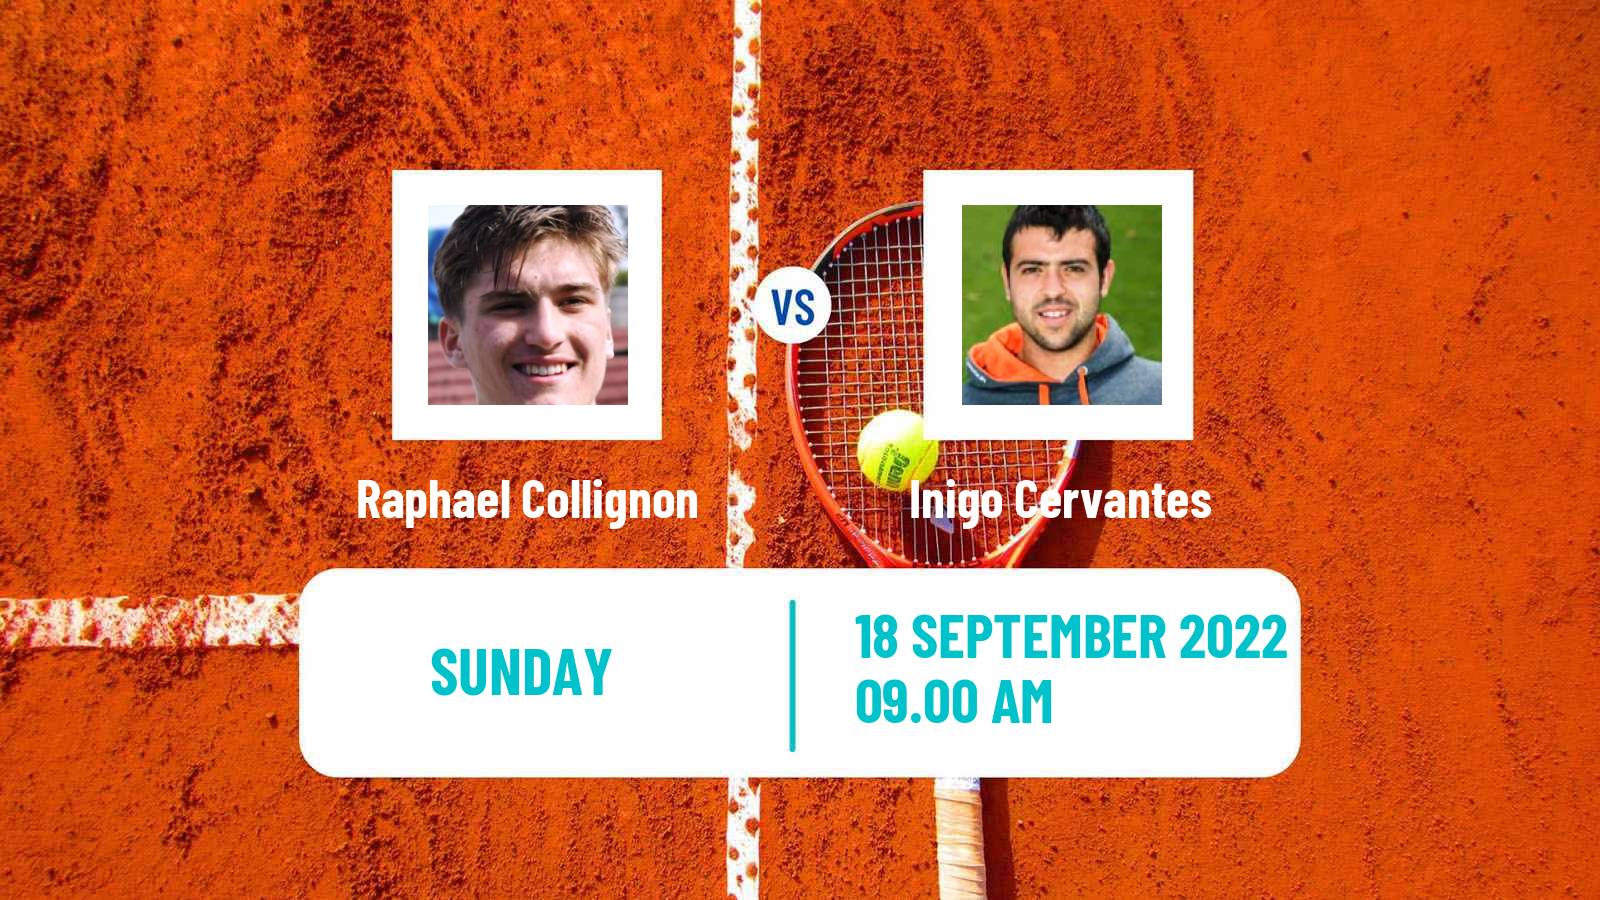 Tennis ATP Challenger Raphael Collignon - Inigo Cervantes